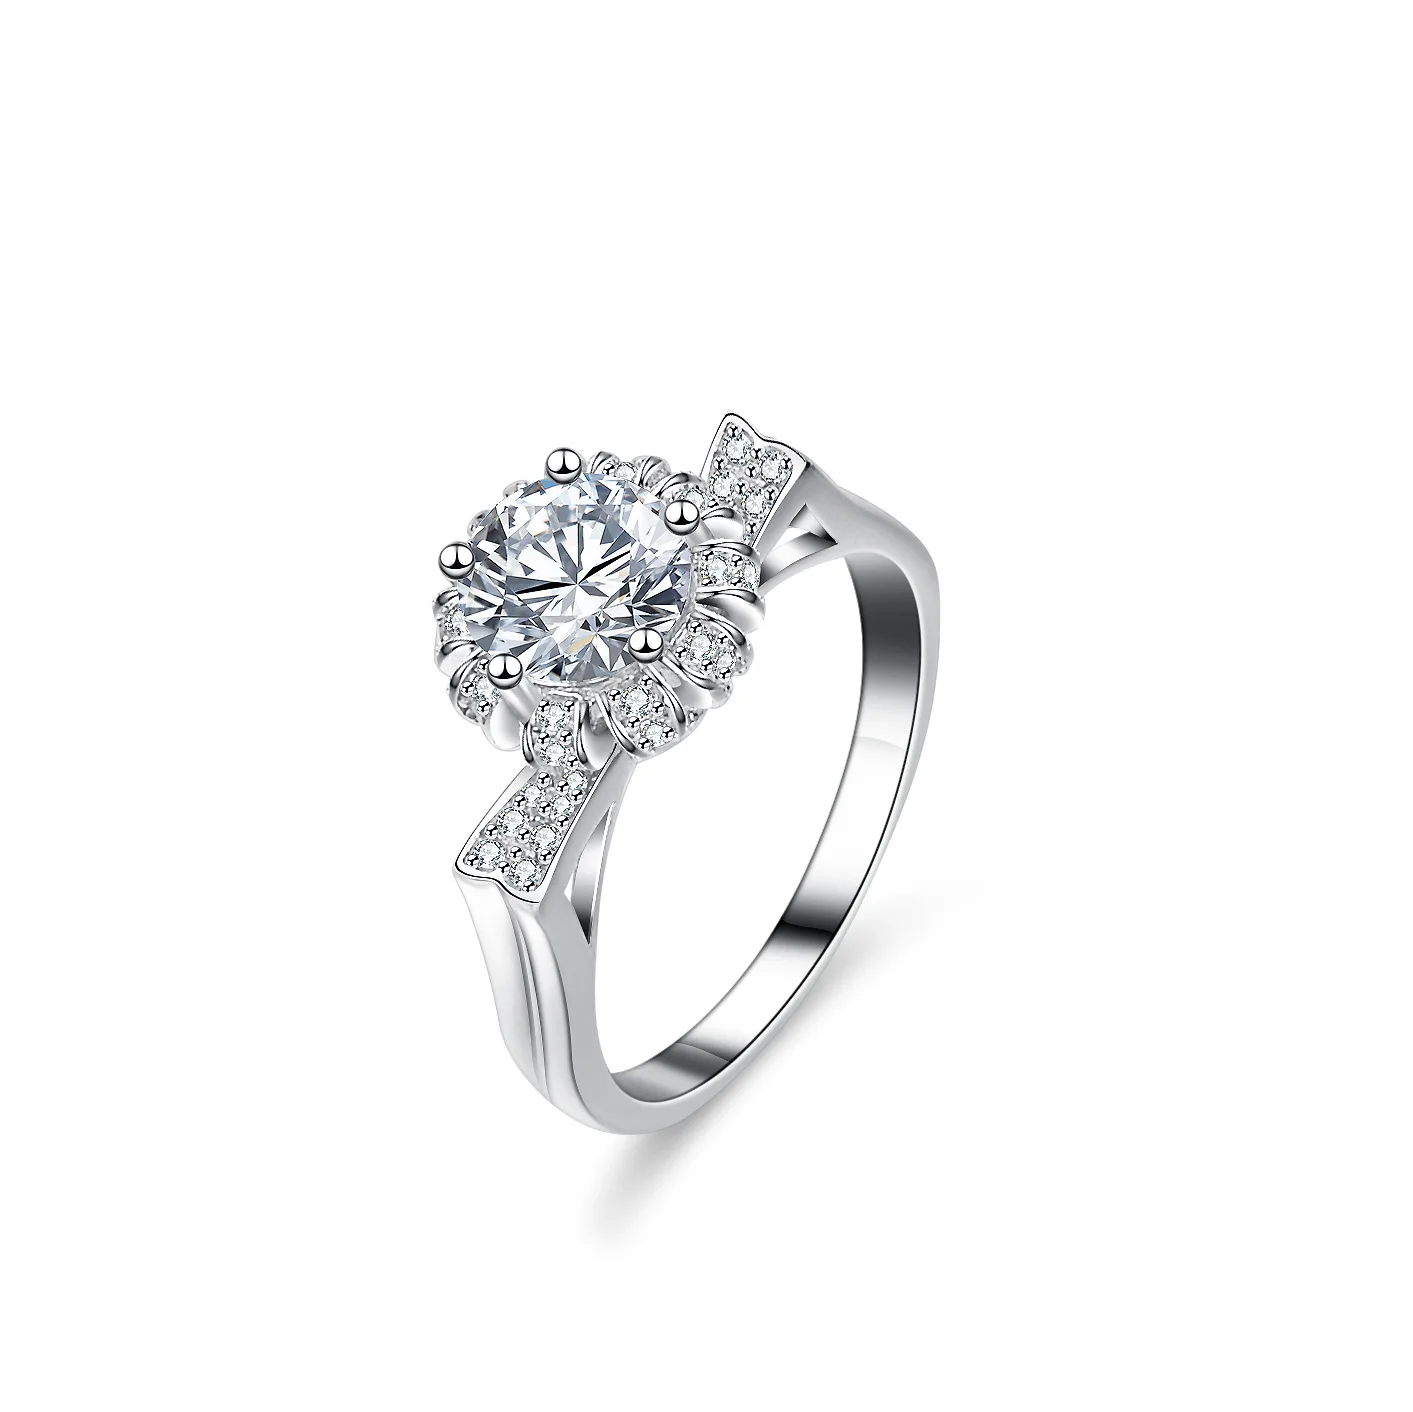 

18K gold ring D color moissanite cross row ring full of diamonds one carat PT950 platinum ring wedding engagement gift